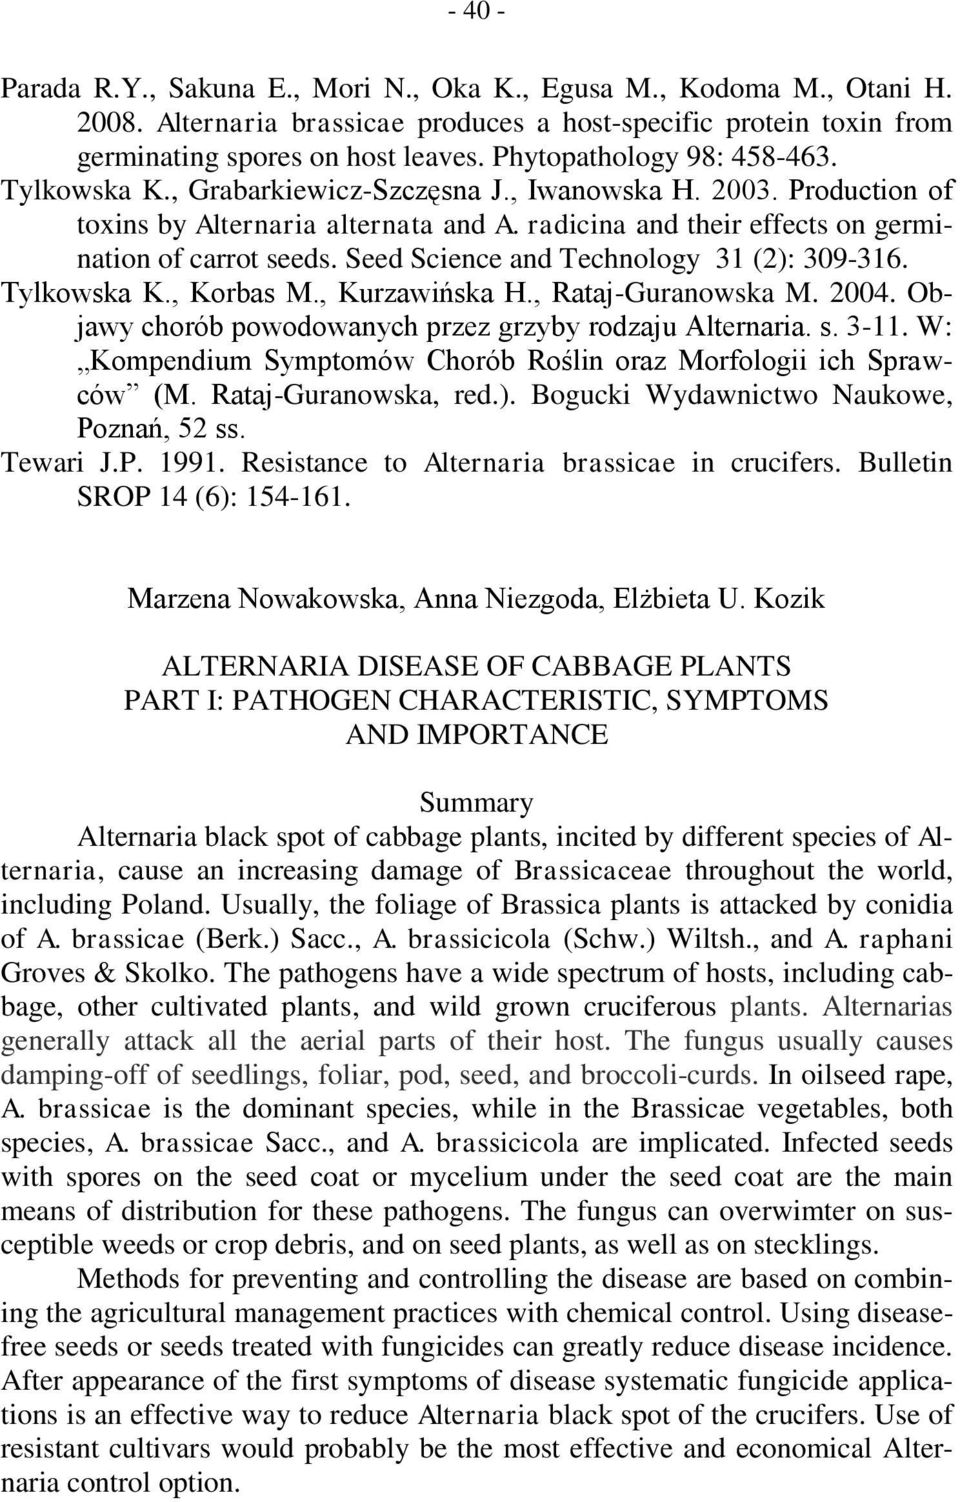 Seed Science and Technology 31 (2): 309-316. Tylkowska K., Korbas M., Kurzawińska H., Rataj-Guranowska M. 2004. Objawy chorób powodowanych przez grzyby rodzaju Alternaria. s. 3-11.